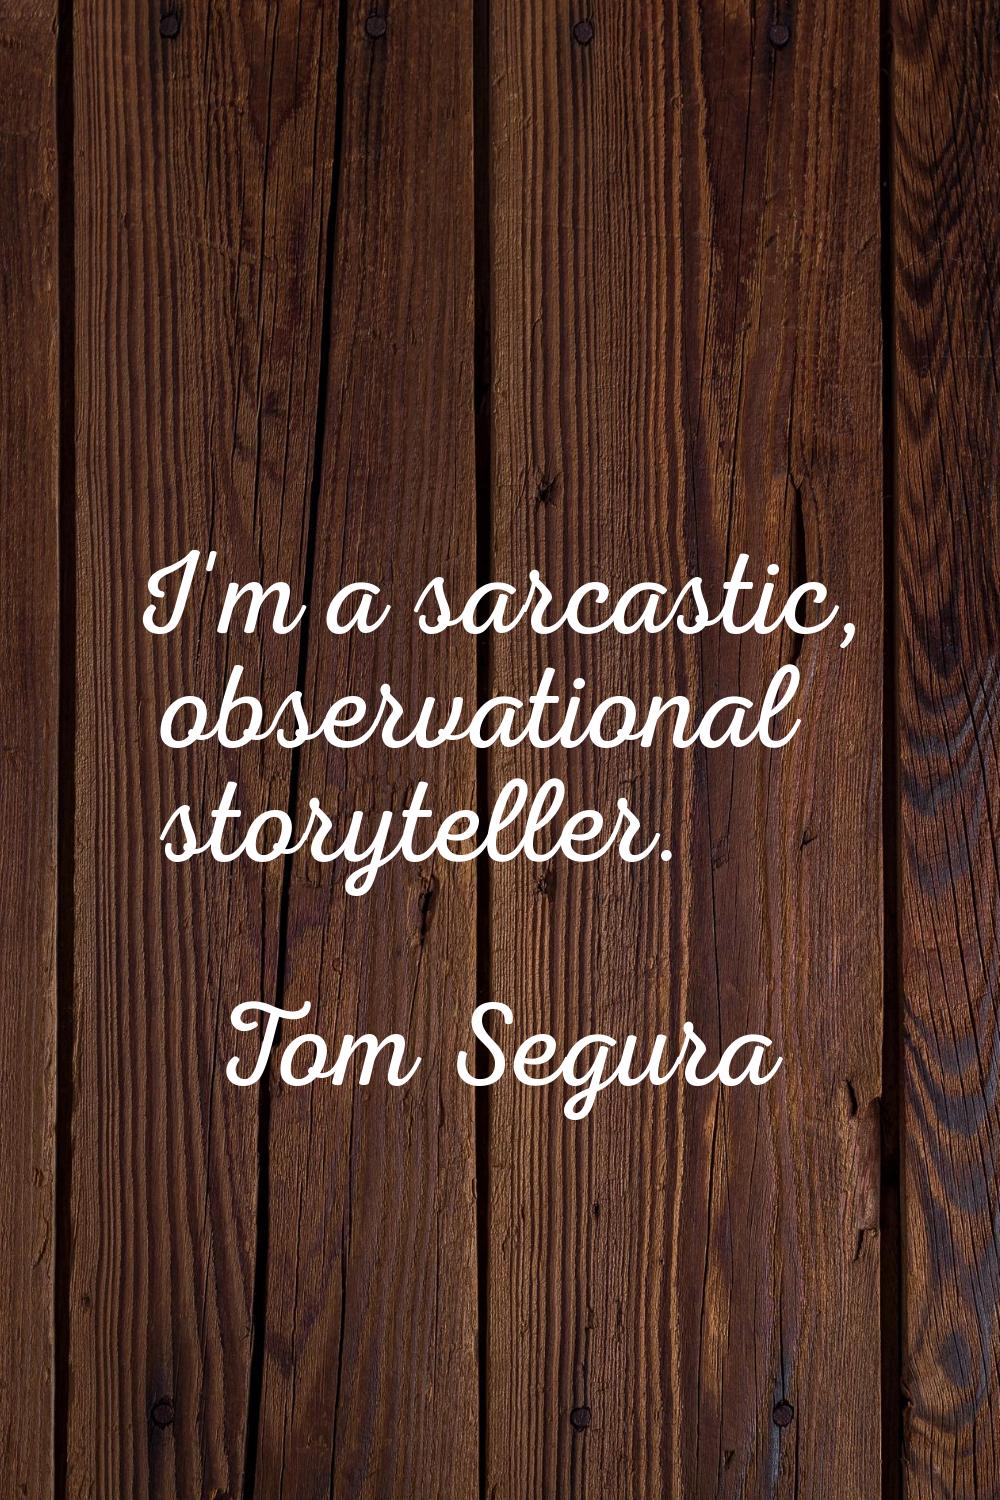 I'm a sarcastic, observational storyteller.